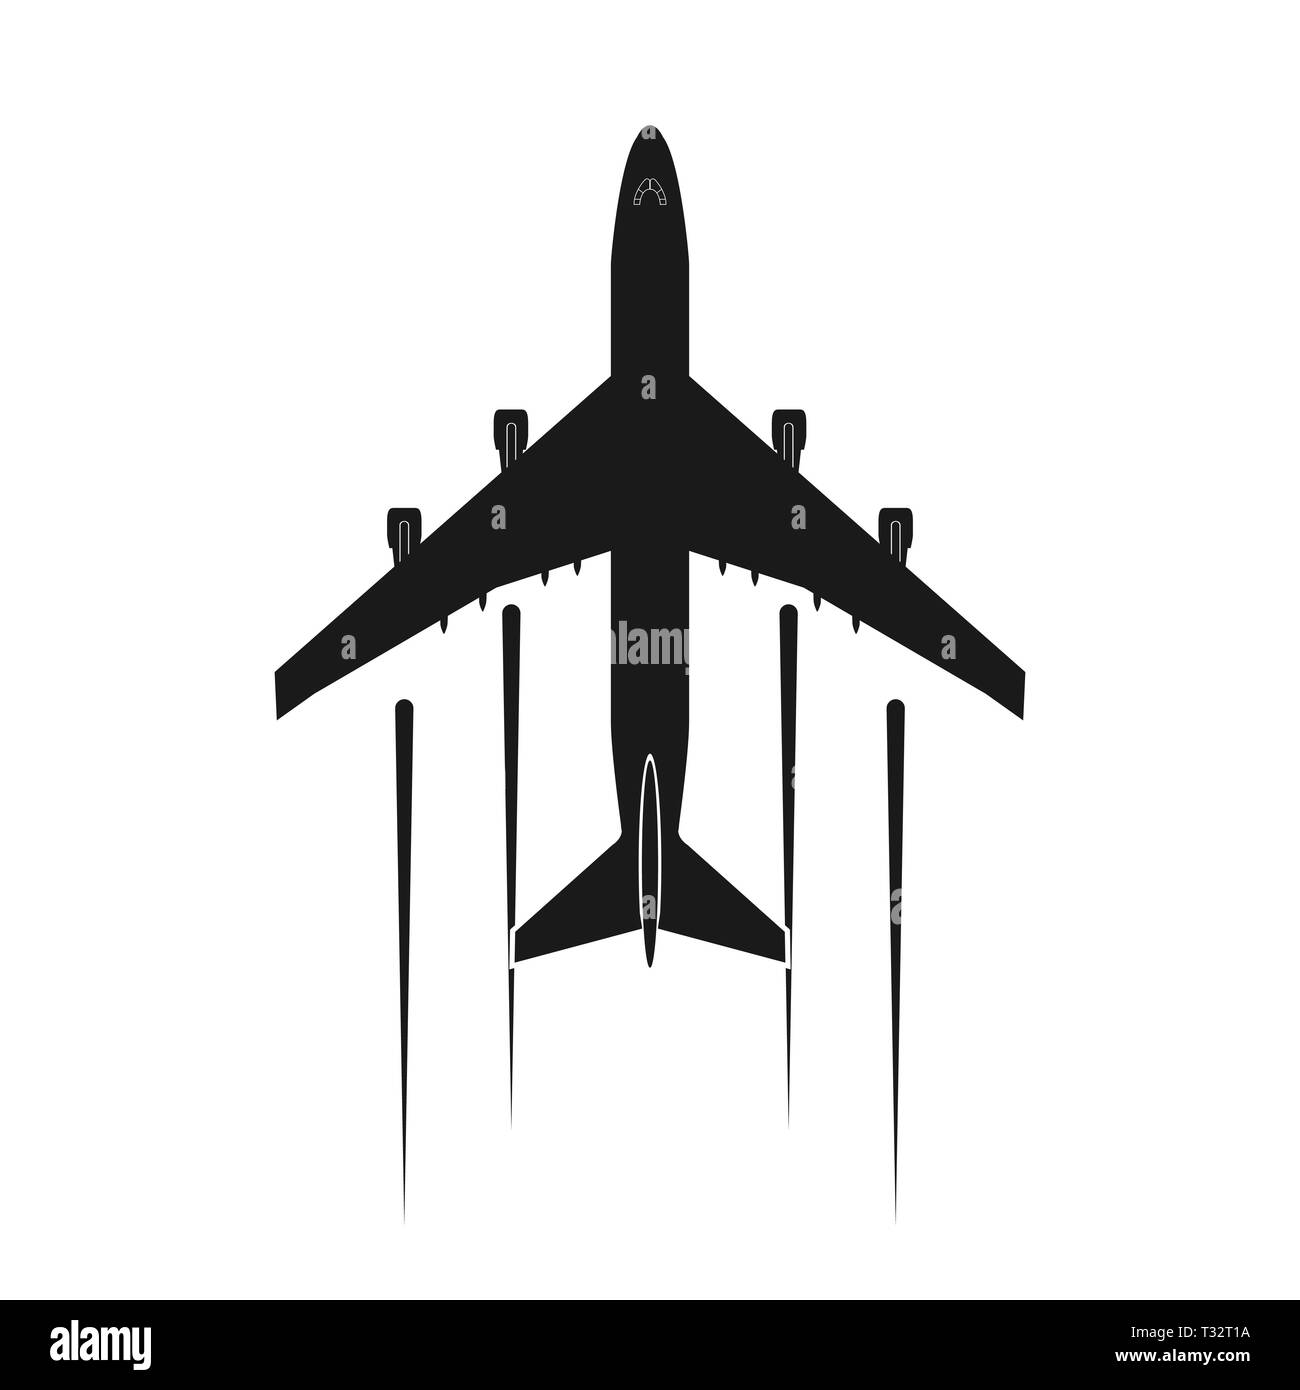 Aeroplane Logos - 29+ Best Aeroplane Logo Ideas. Free Aeroplane Logo Maker.  | 99designs